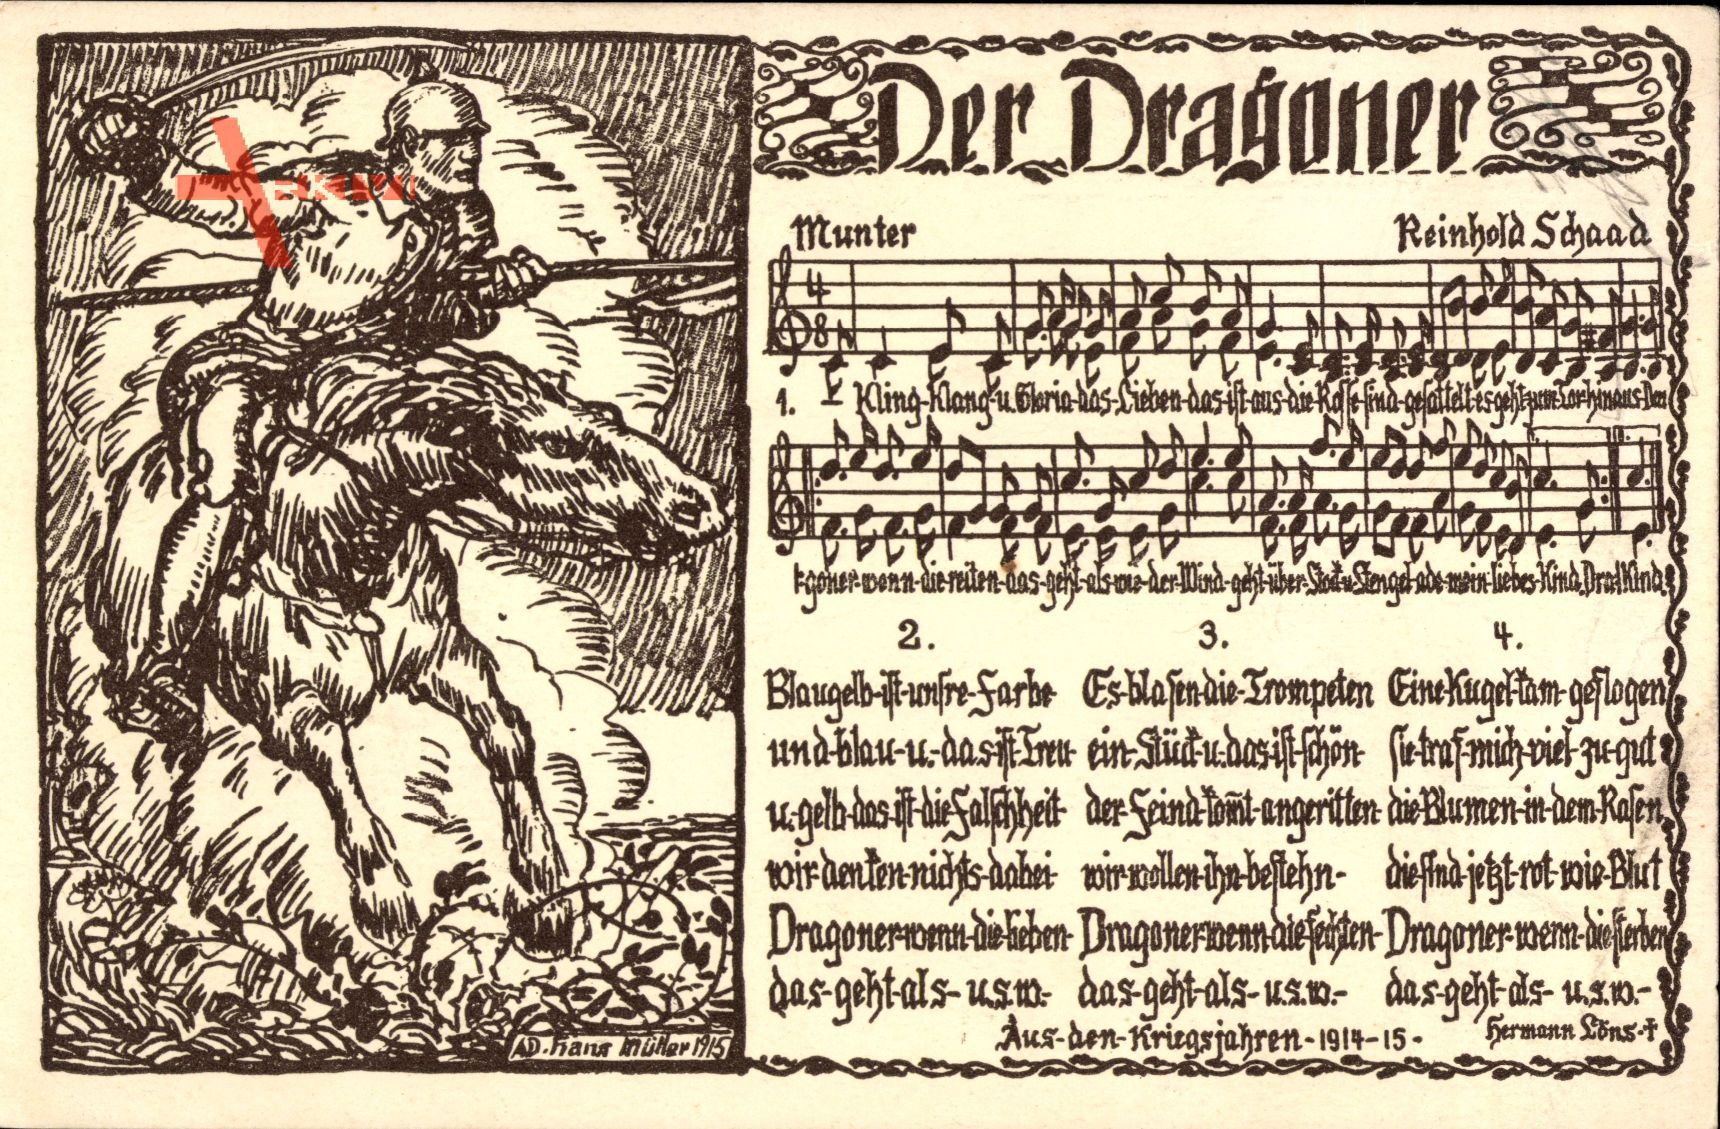 Lied Der Dragoner, Reinhold Schaad, Kaiserreich